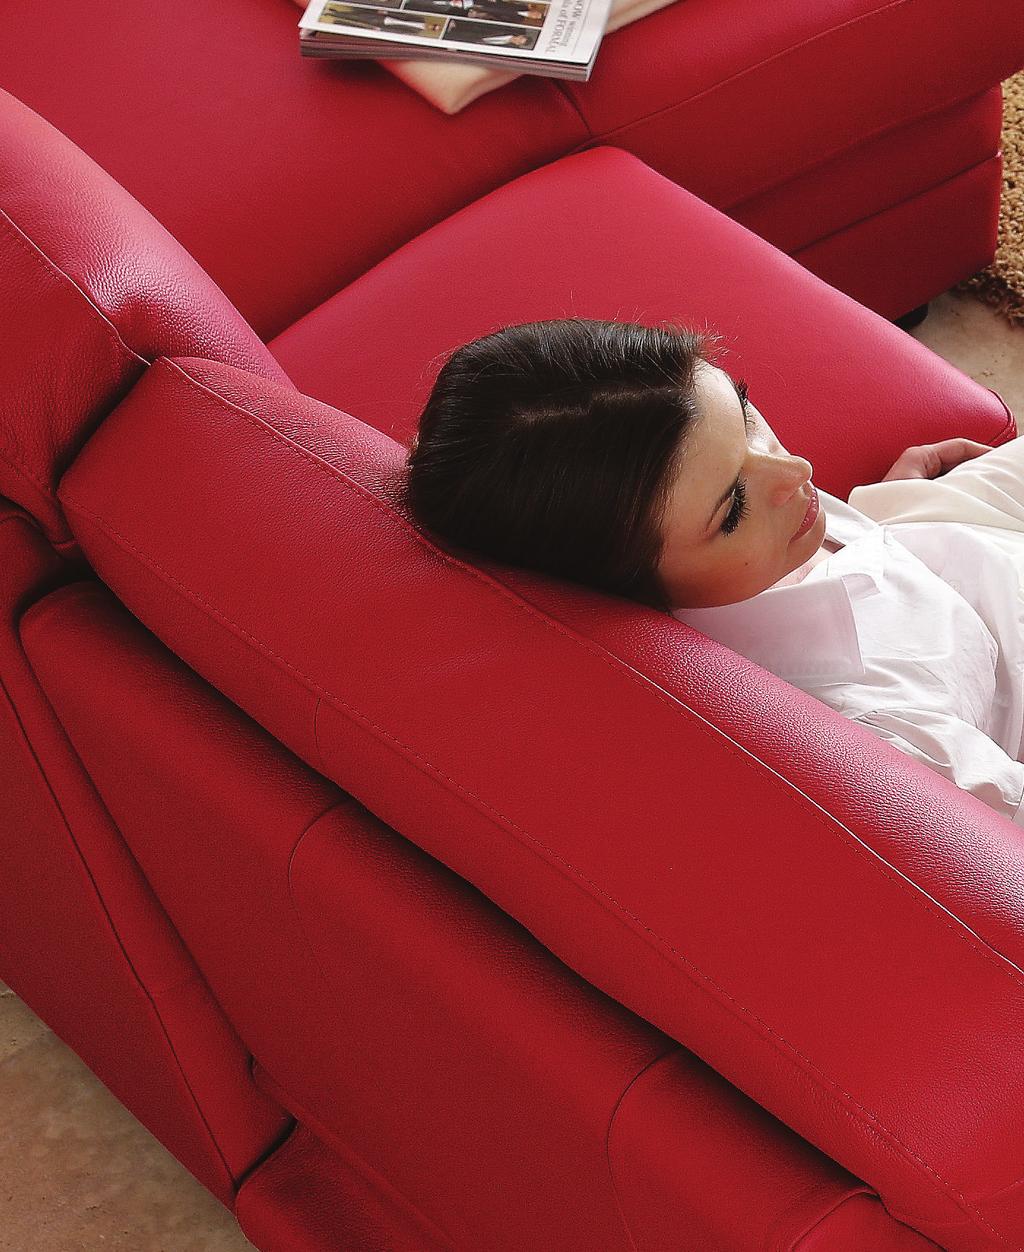 CONCEPT Concept Comfort assoluto per i divani recliner, che nascono per soddisfare i clienti più esigenti.